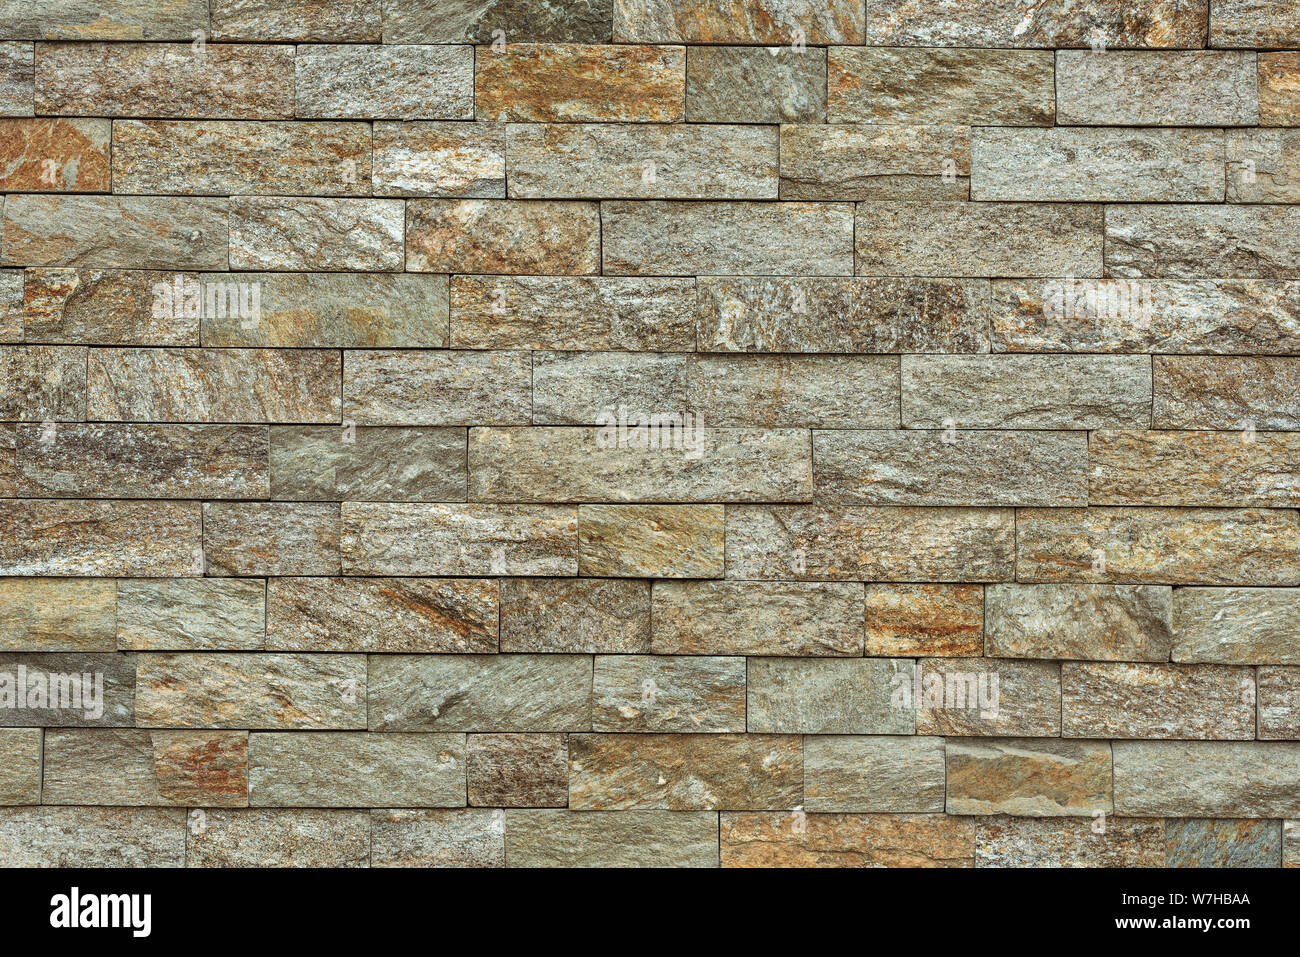 Stein Ziegel Fliesen als Hintergrund, modernen italienischen Stil Wand aus Fliesen- steinblöcke Stockfoto